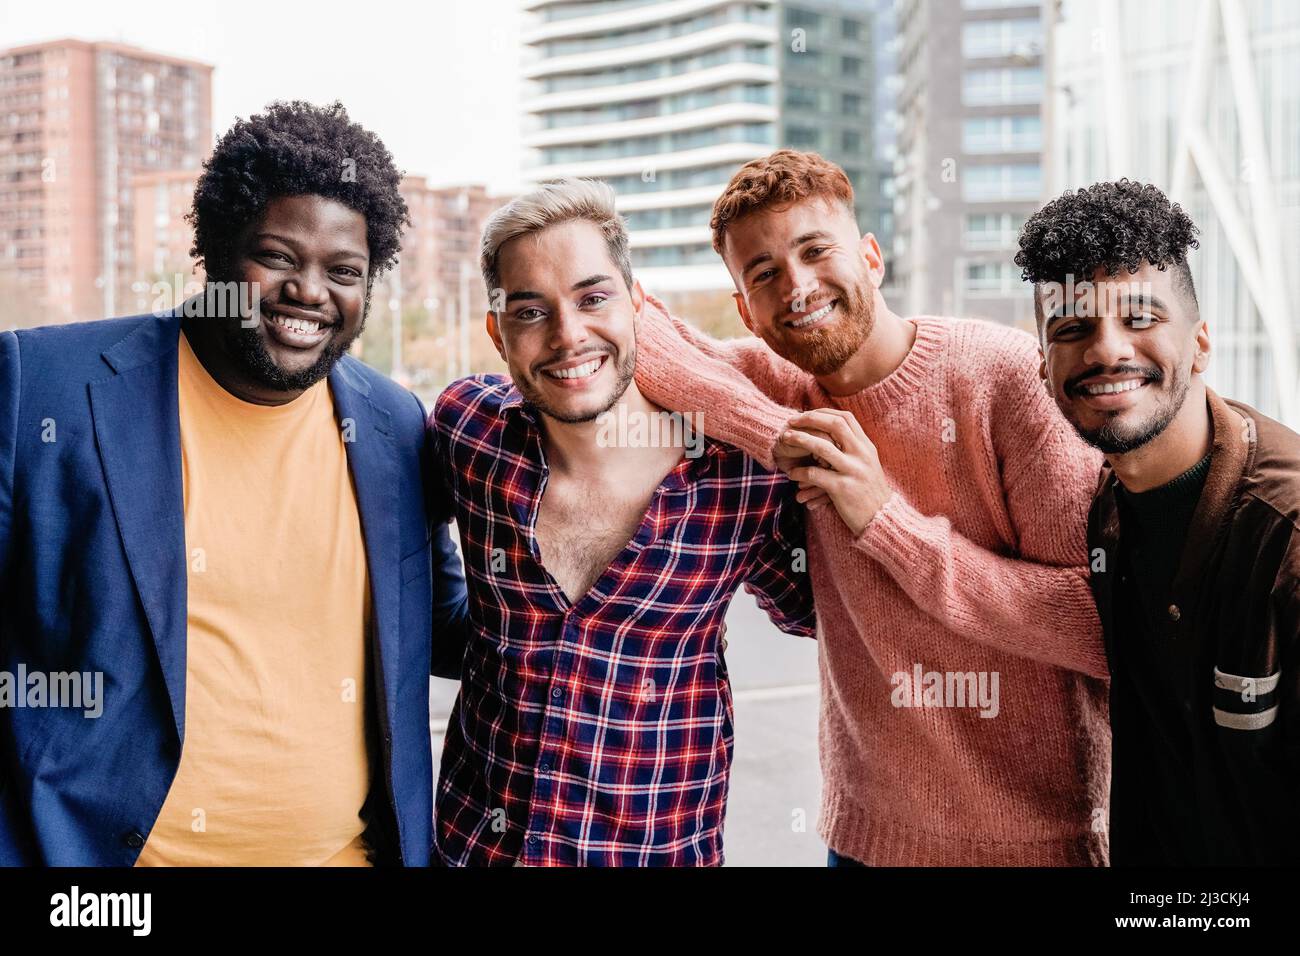 Diversi gruppi di amici alla moda che si divertono all'aperto - diversità e gente multirazziale - Focus su gay non binario Foto Stock